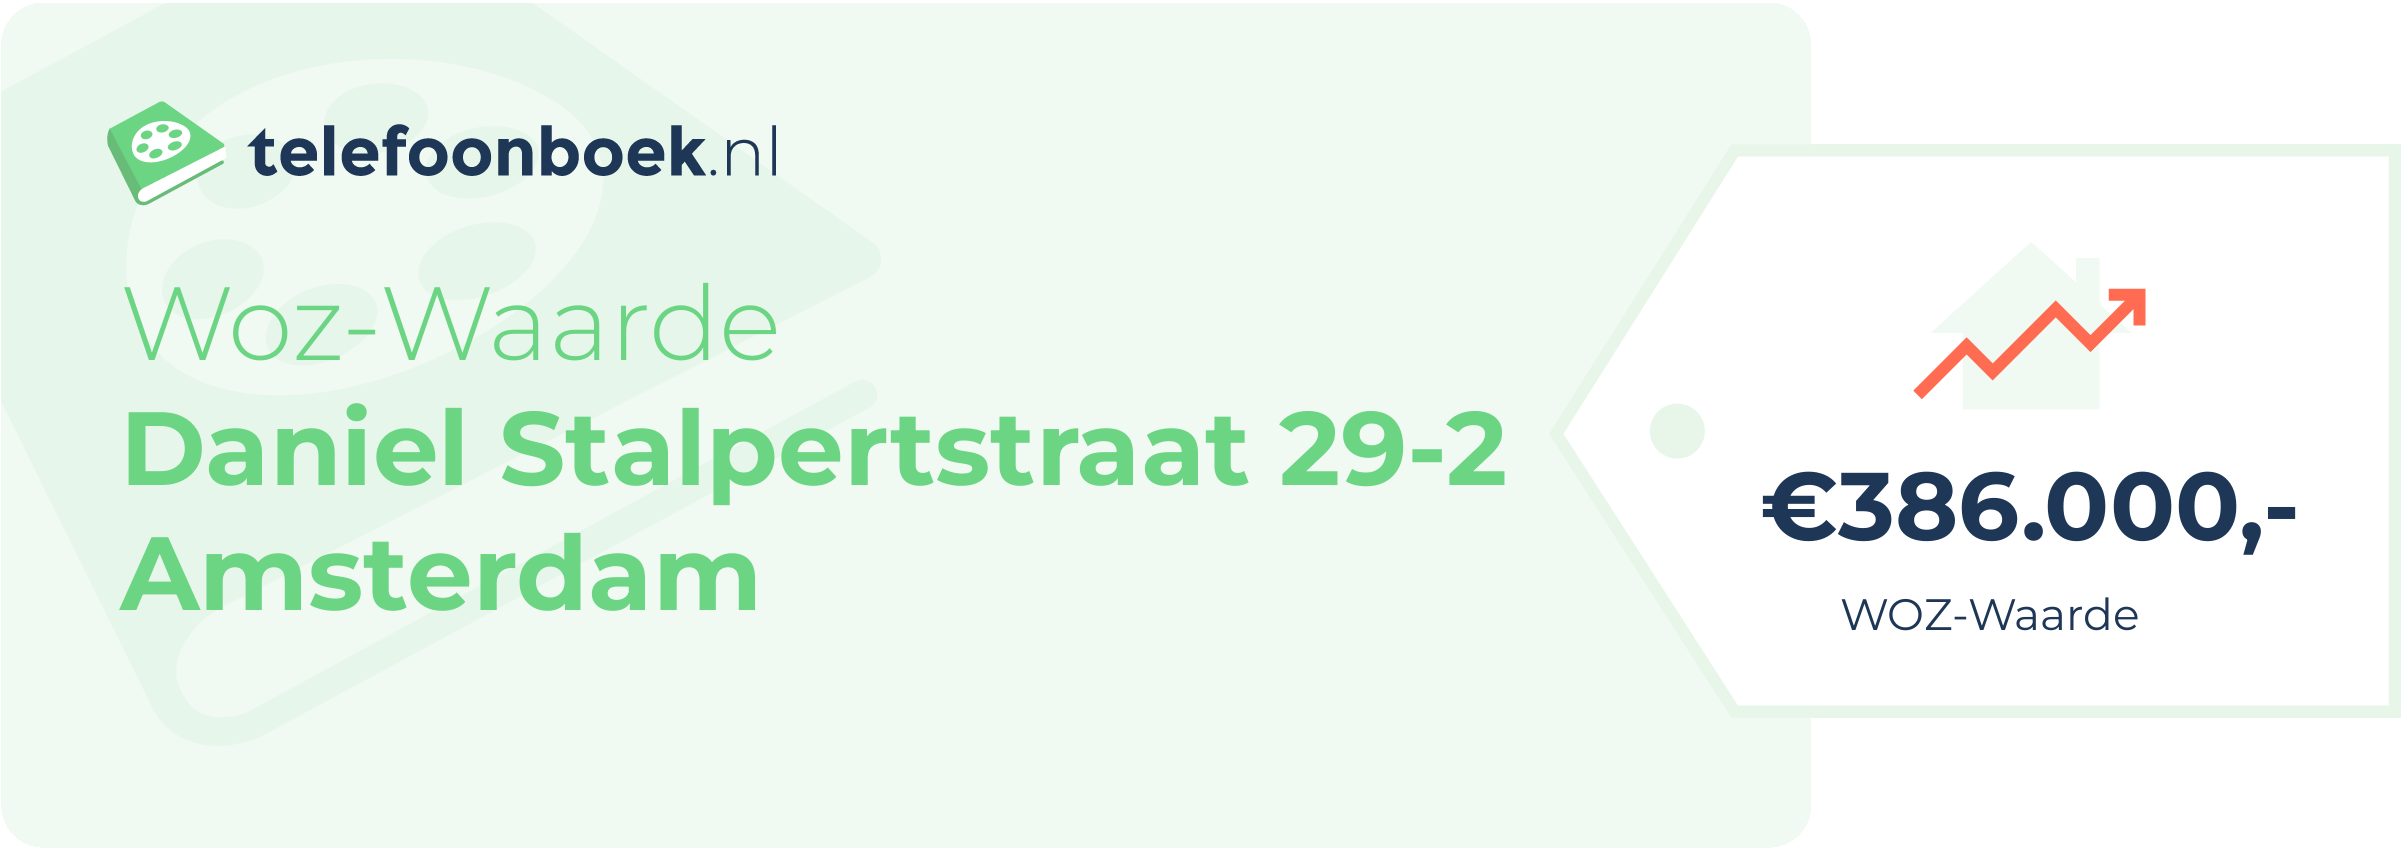 WOZ-waarde Daniel Stalpertstraat 29-2 Amsterdam